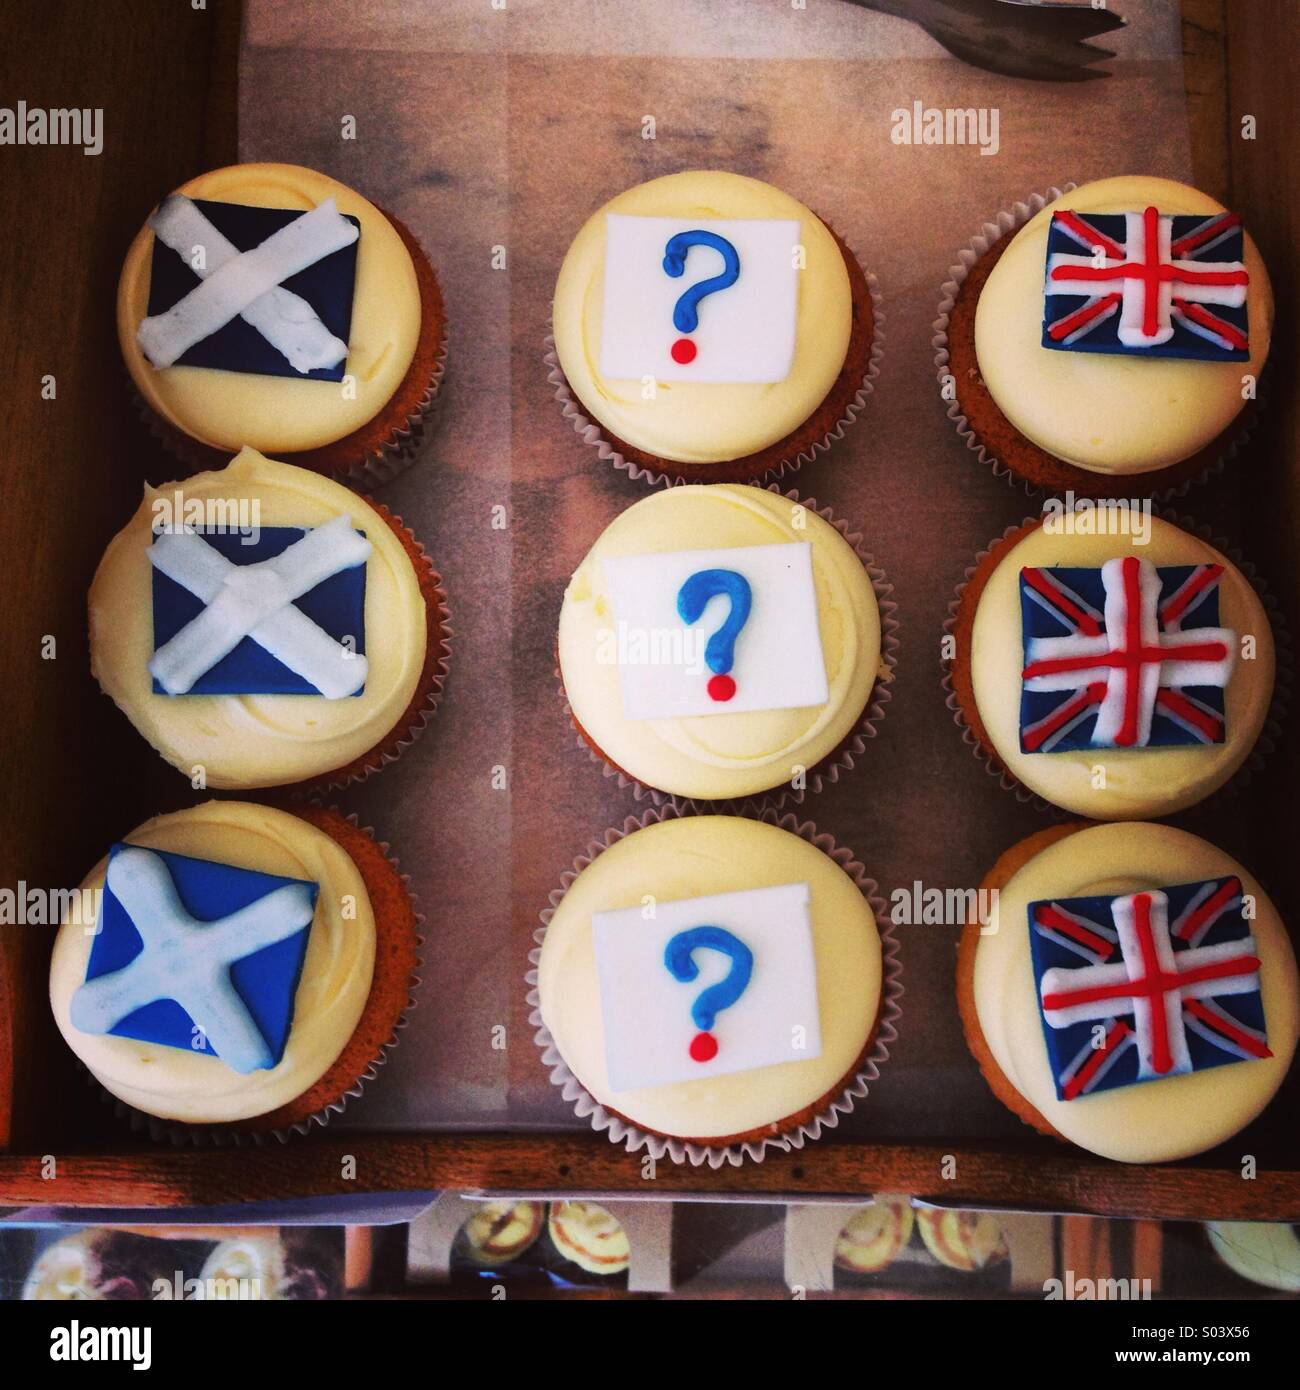 Ce qui témoigne de divergences de vue politiques petits gâteaux pour le référendum pour l'indépendance écossaise Banque D'Images